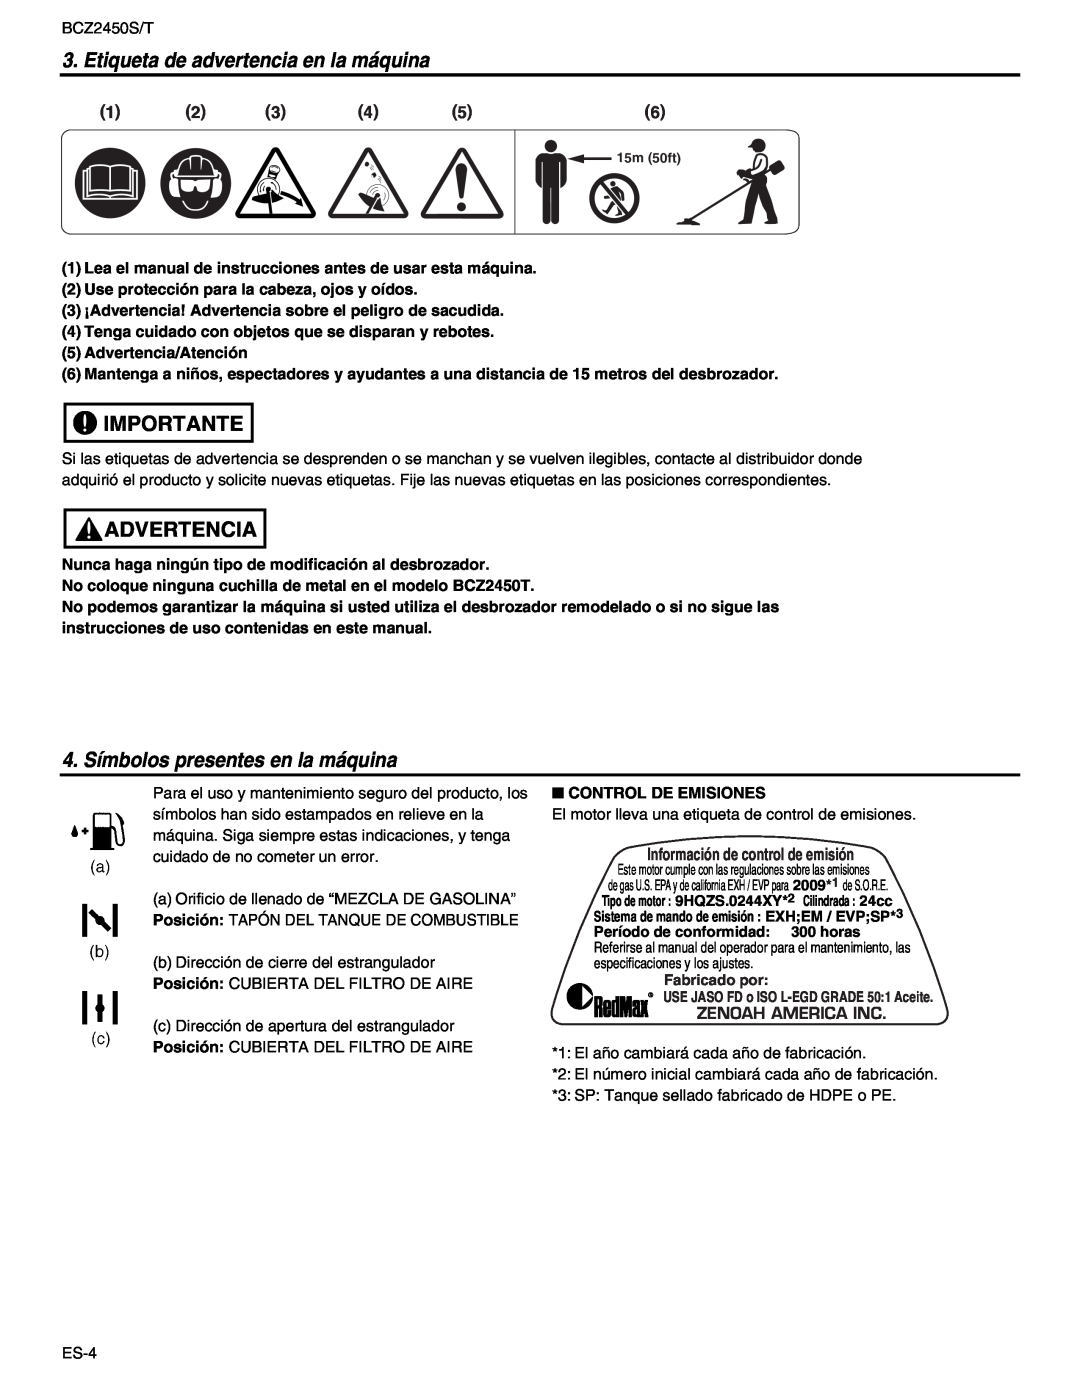 RedMax BCZ2450T manual Etiqueta de advertencia en la máquina, Importante, Advertencia, 4. Símbolos presentes en la máquina 